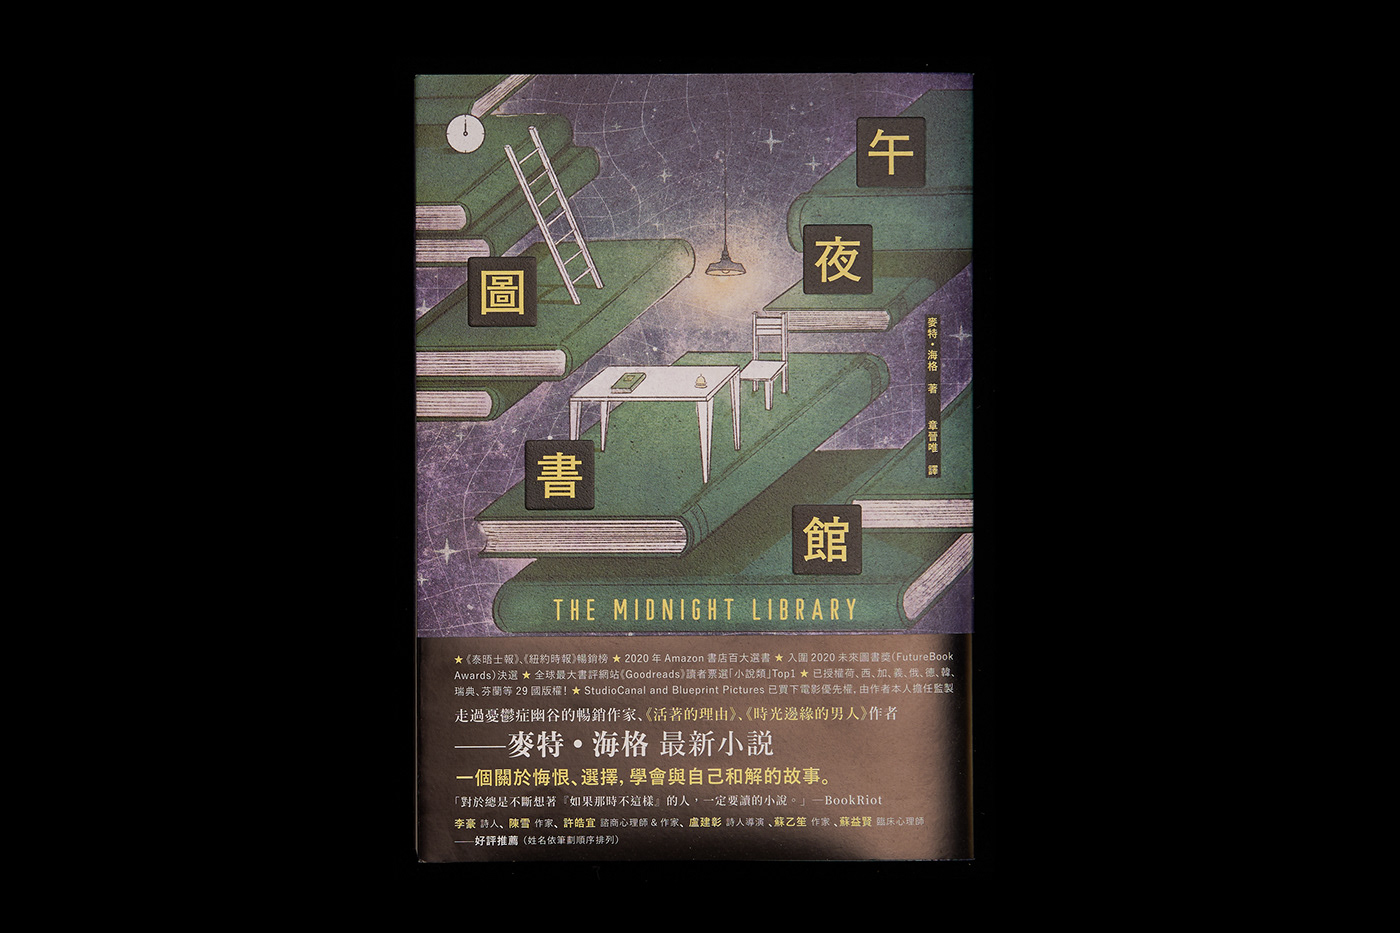 台湾设计师高偉哲图书封面设计